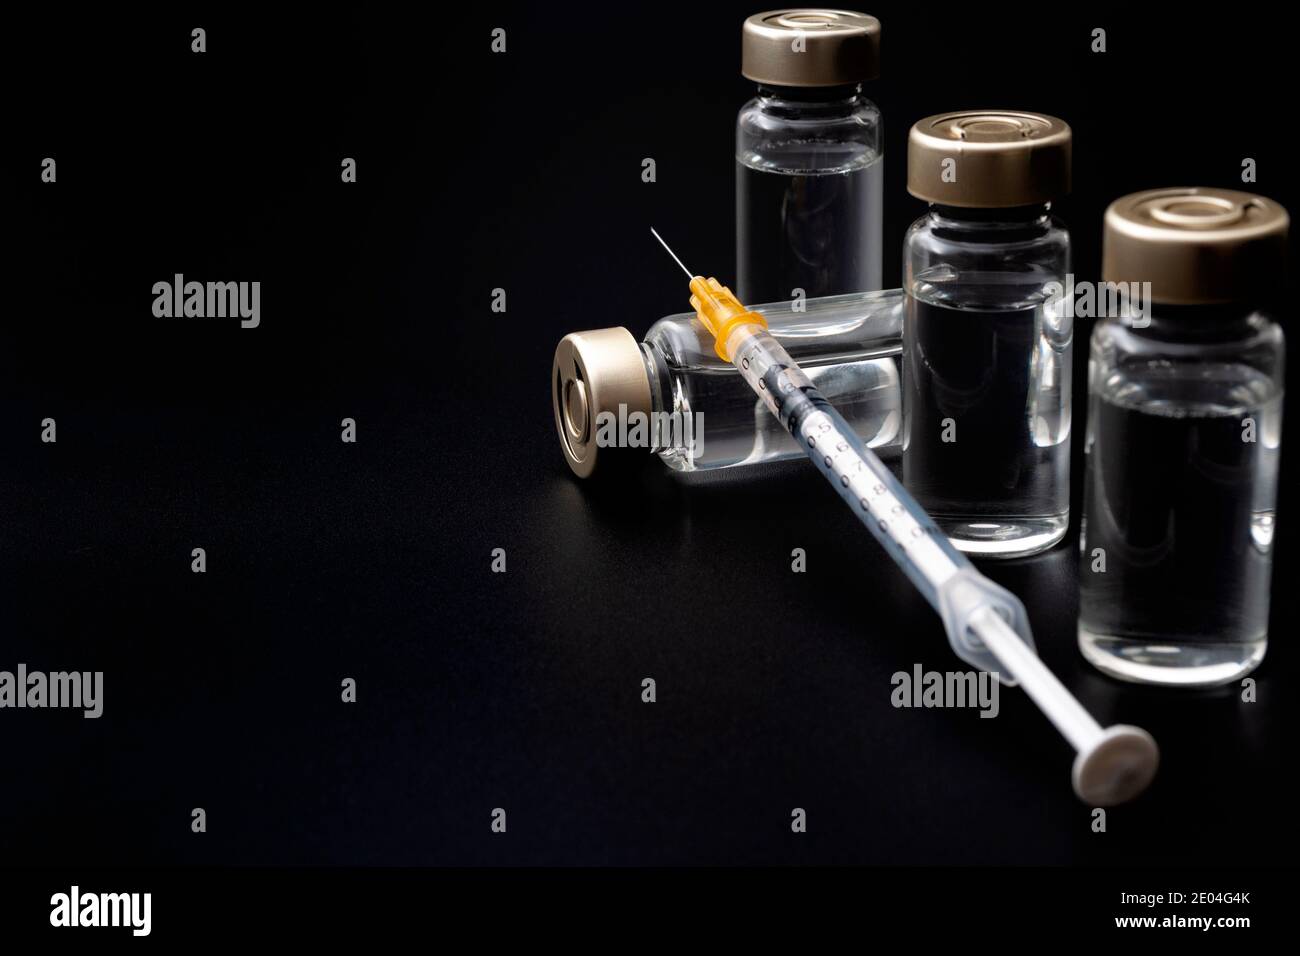 Impfstoffe, Botulinumtoxin und Insulinampullen – Konzeptthema mit Glasfläschchen mit klarer Flüssigkeit neben einer Spritze und einer auf b isolierten hypodermischen Nadel Stockfoto